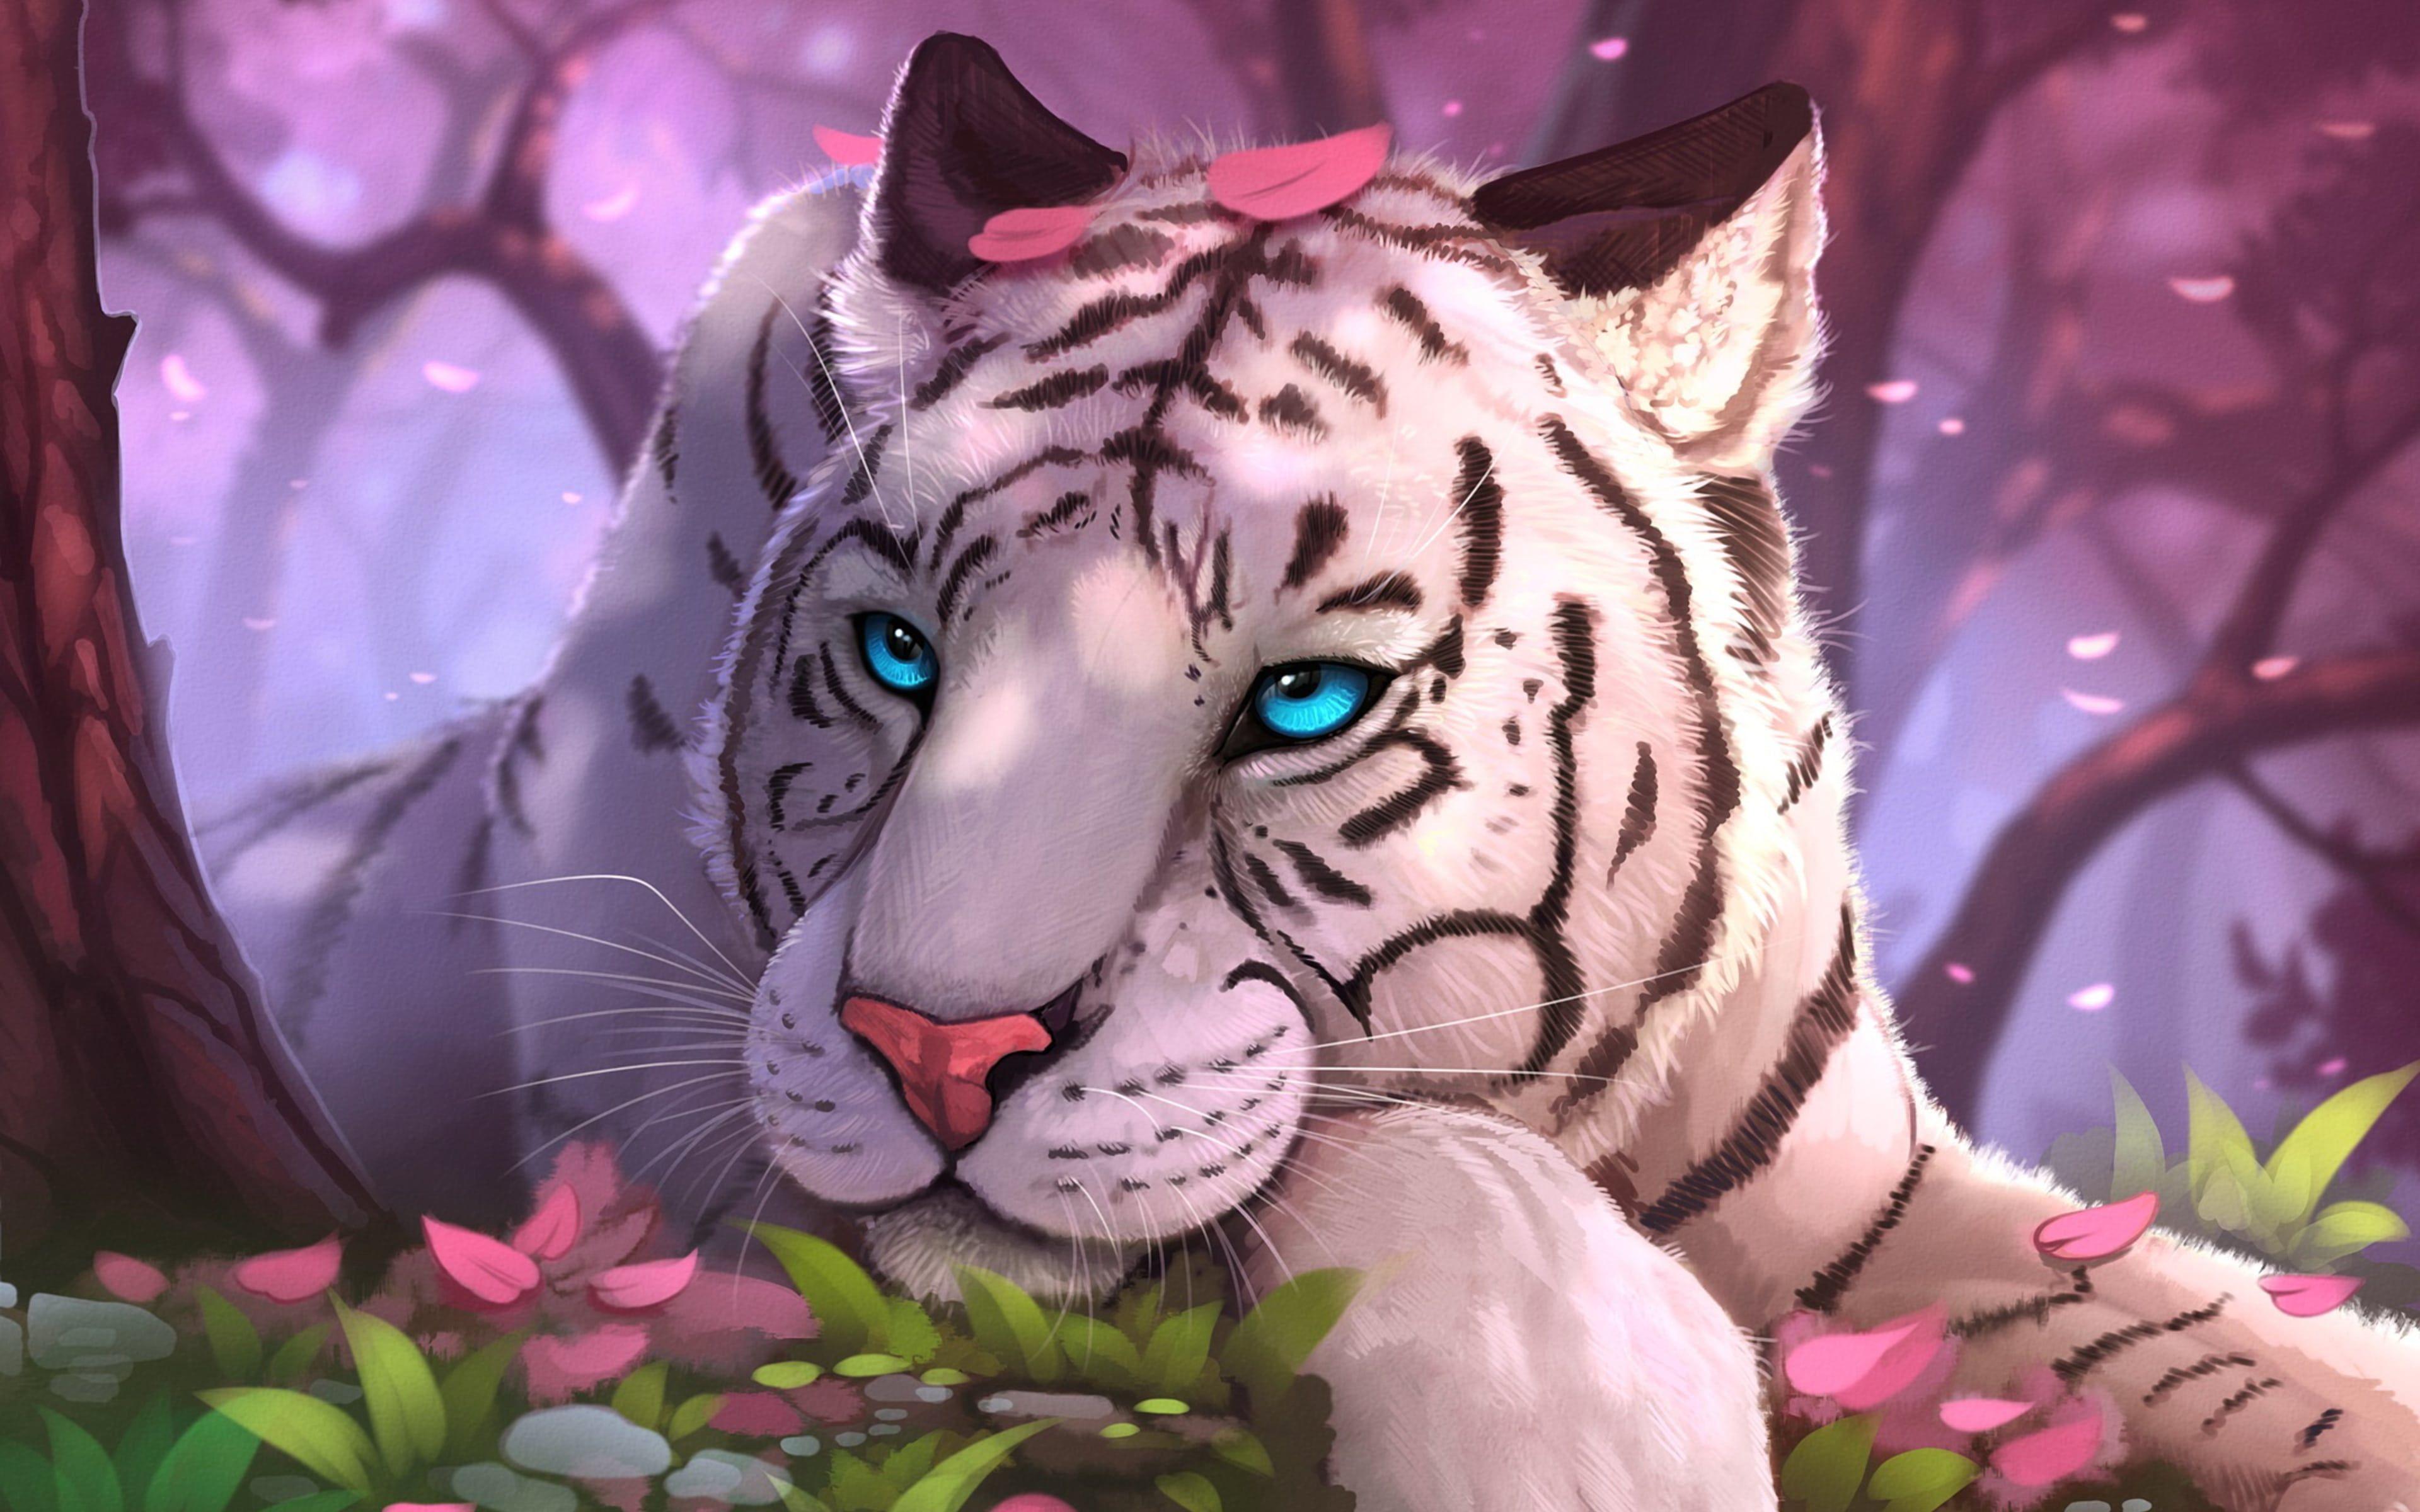 White Tiger Pink Forest Fantasy Art. Tiger artwork, Tiger